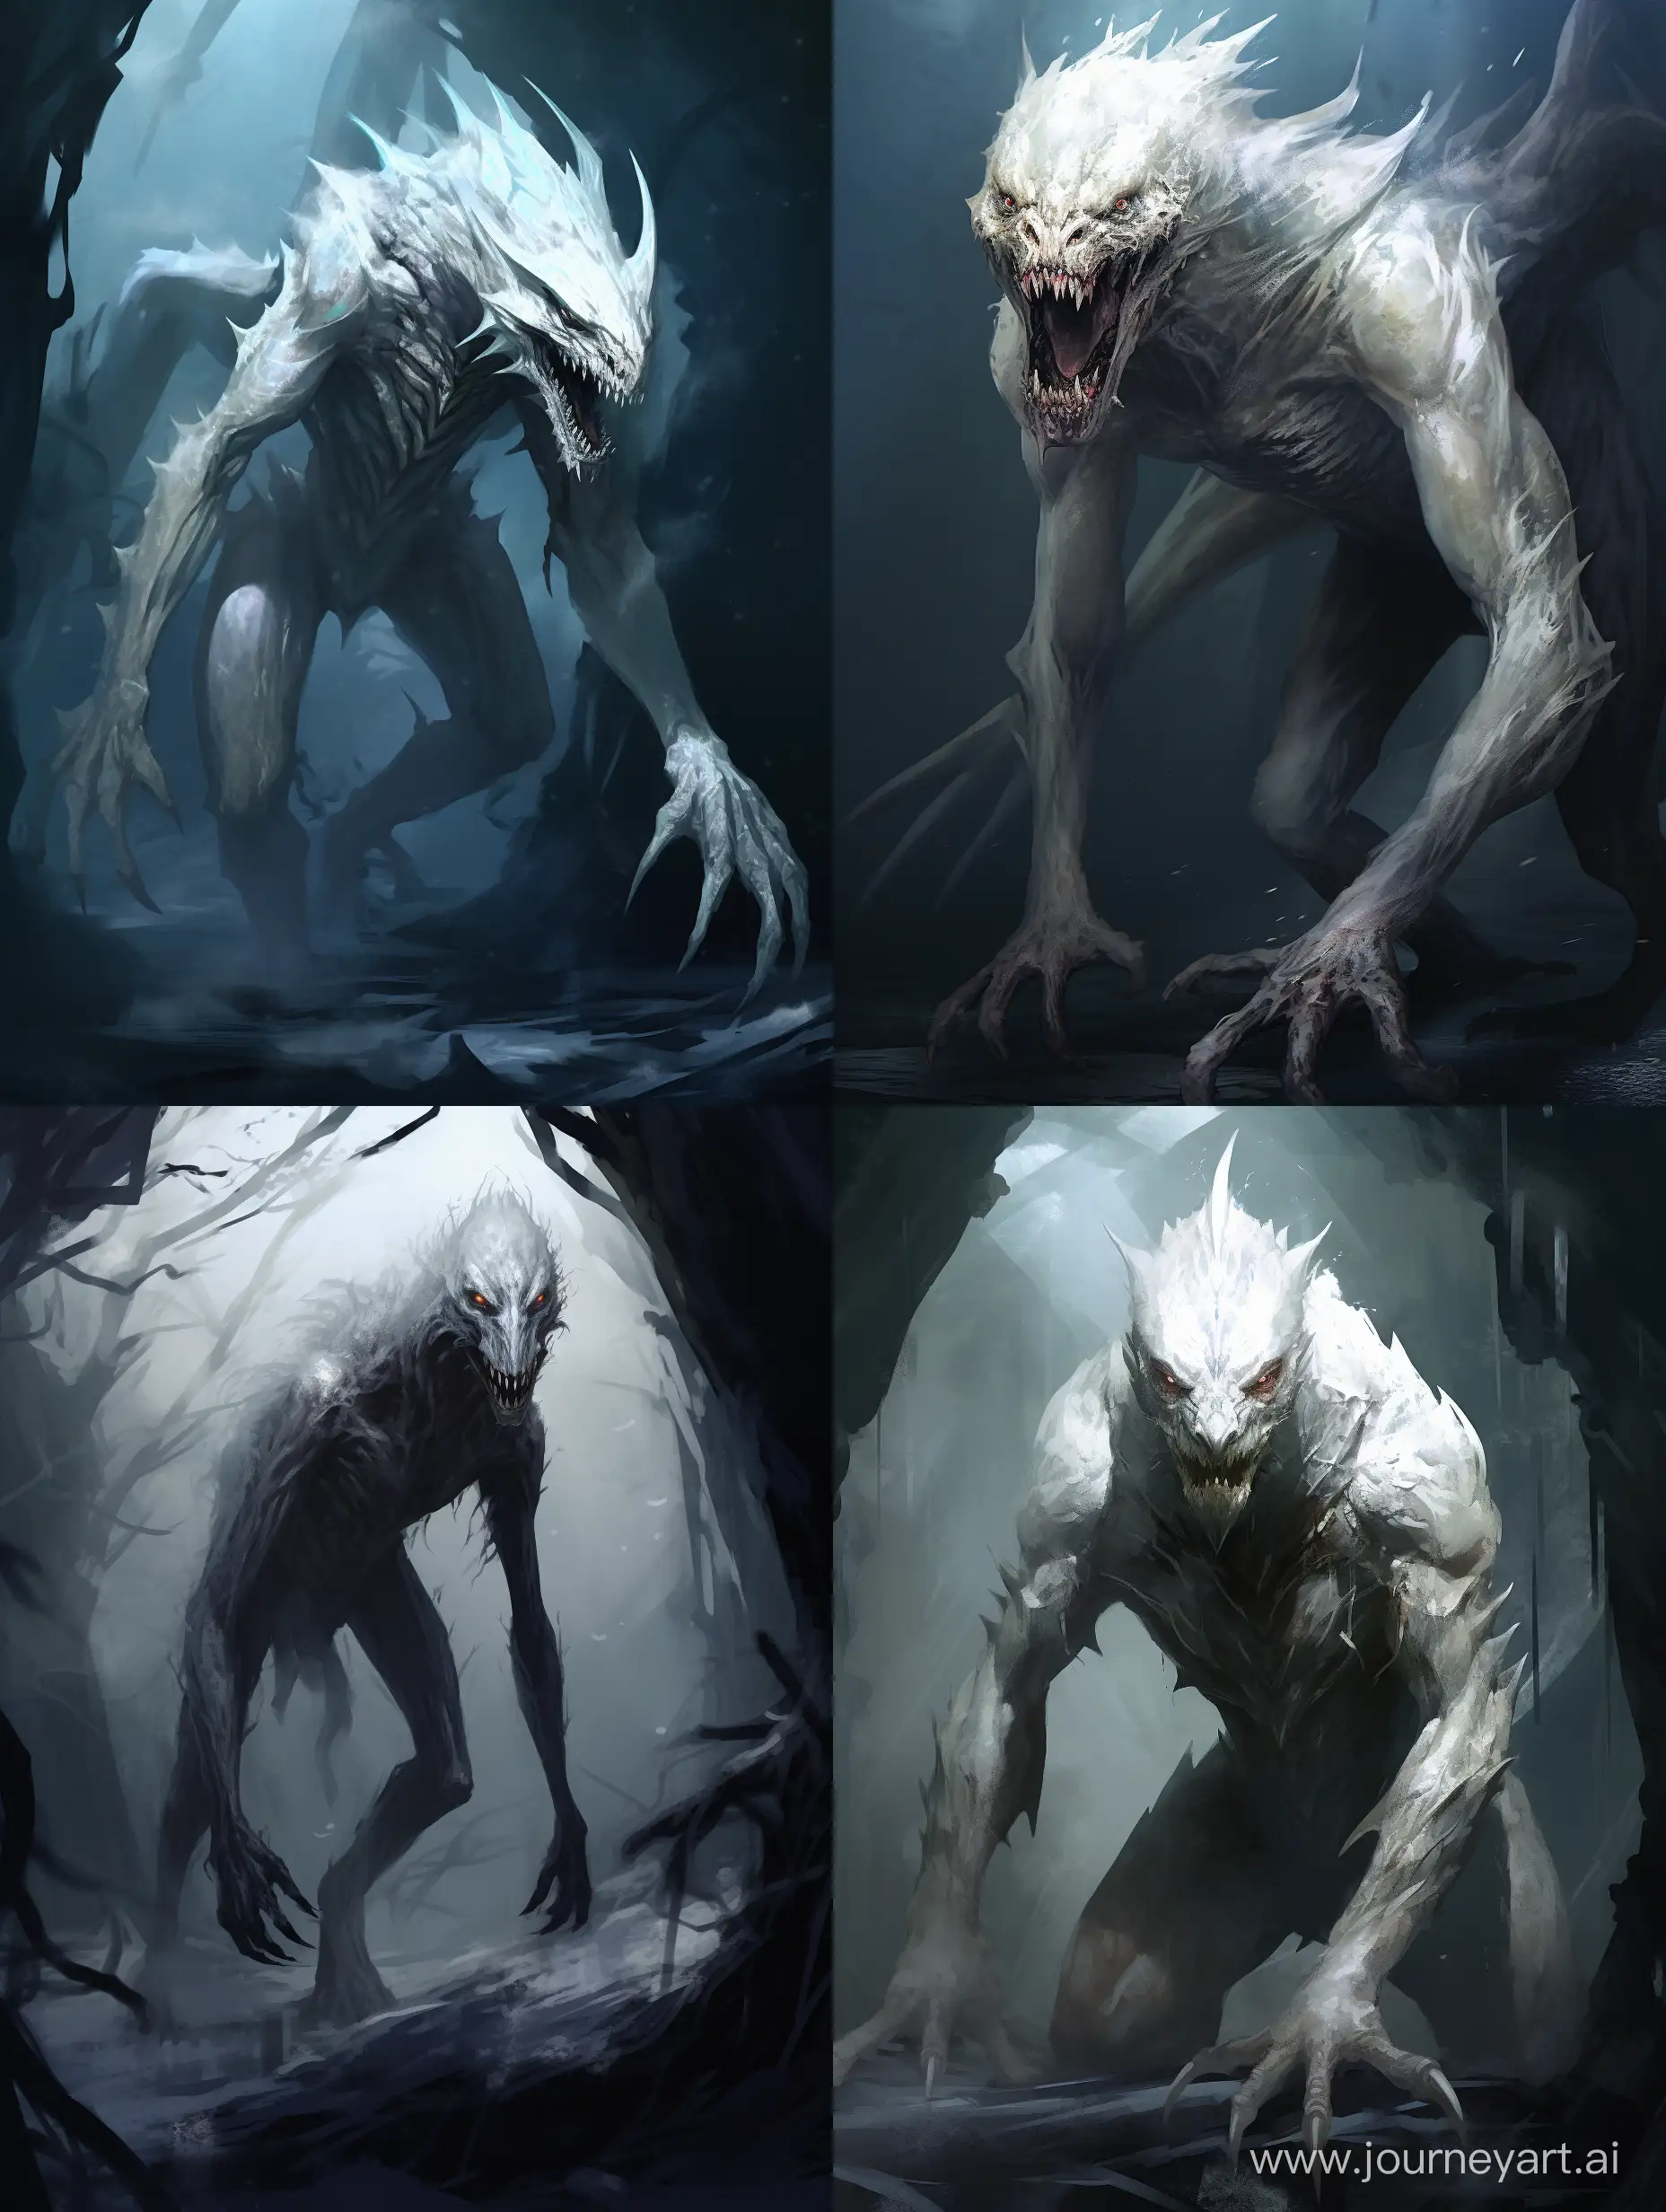 Eyesless-Monster-Reptile-Hybrid-in-Dark-Fantasy-Art